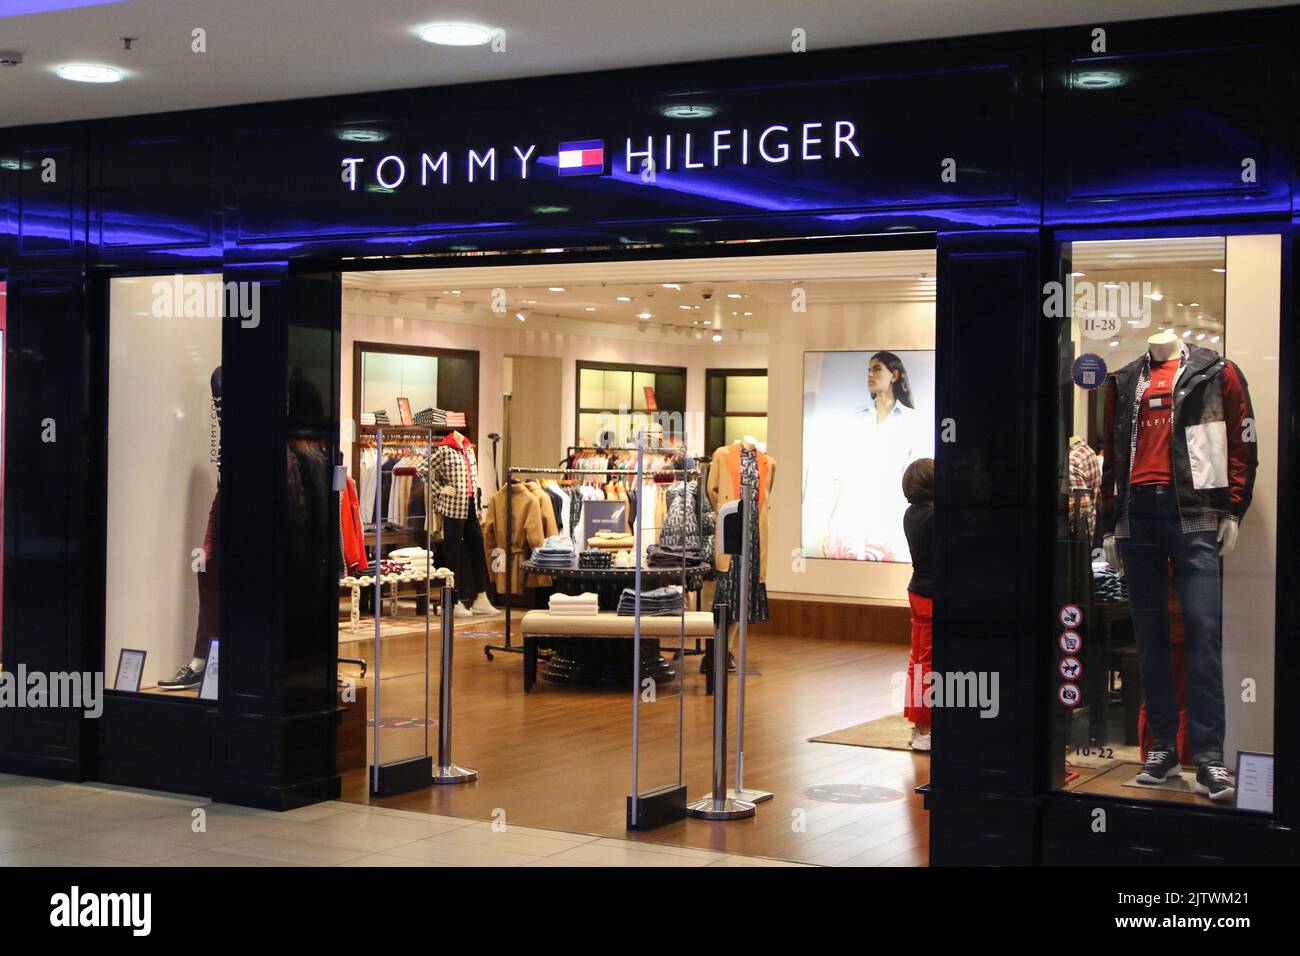 Tommy hilfiger clothing immagini e fotografie stock ad alta risoluzione -  Alamy